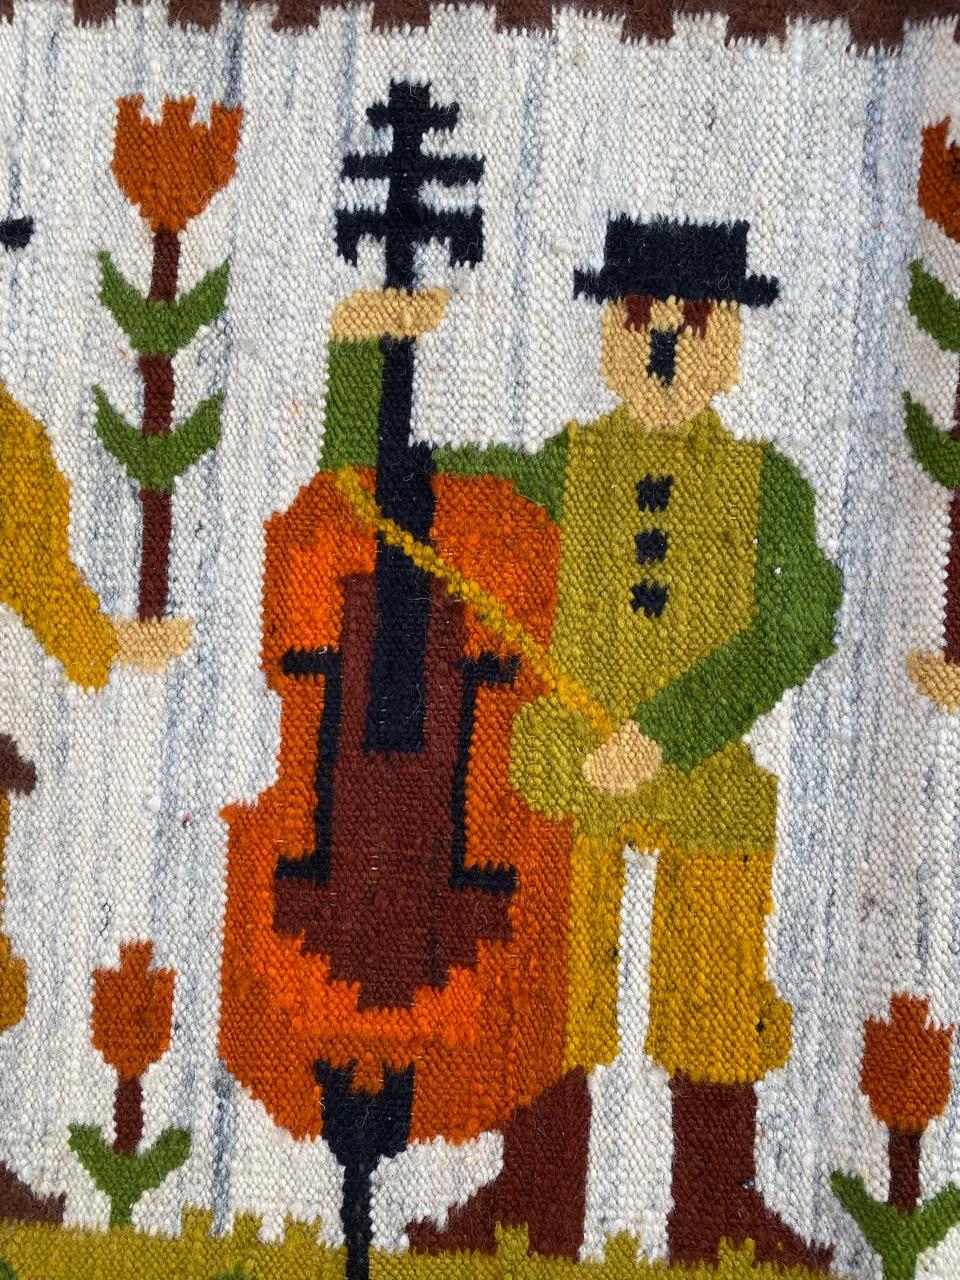 Sehr schöne Mitte des Jahrhunderts polnischen Wandteppich Kilim, mit schönen einheimischen Design und schöne Farben, komplett von Hand gewebt mit Wolle auf Baumwolle Grundlage.

✨✨✨
